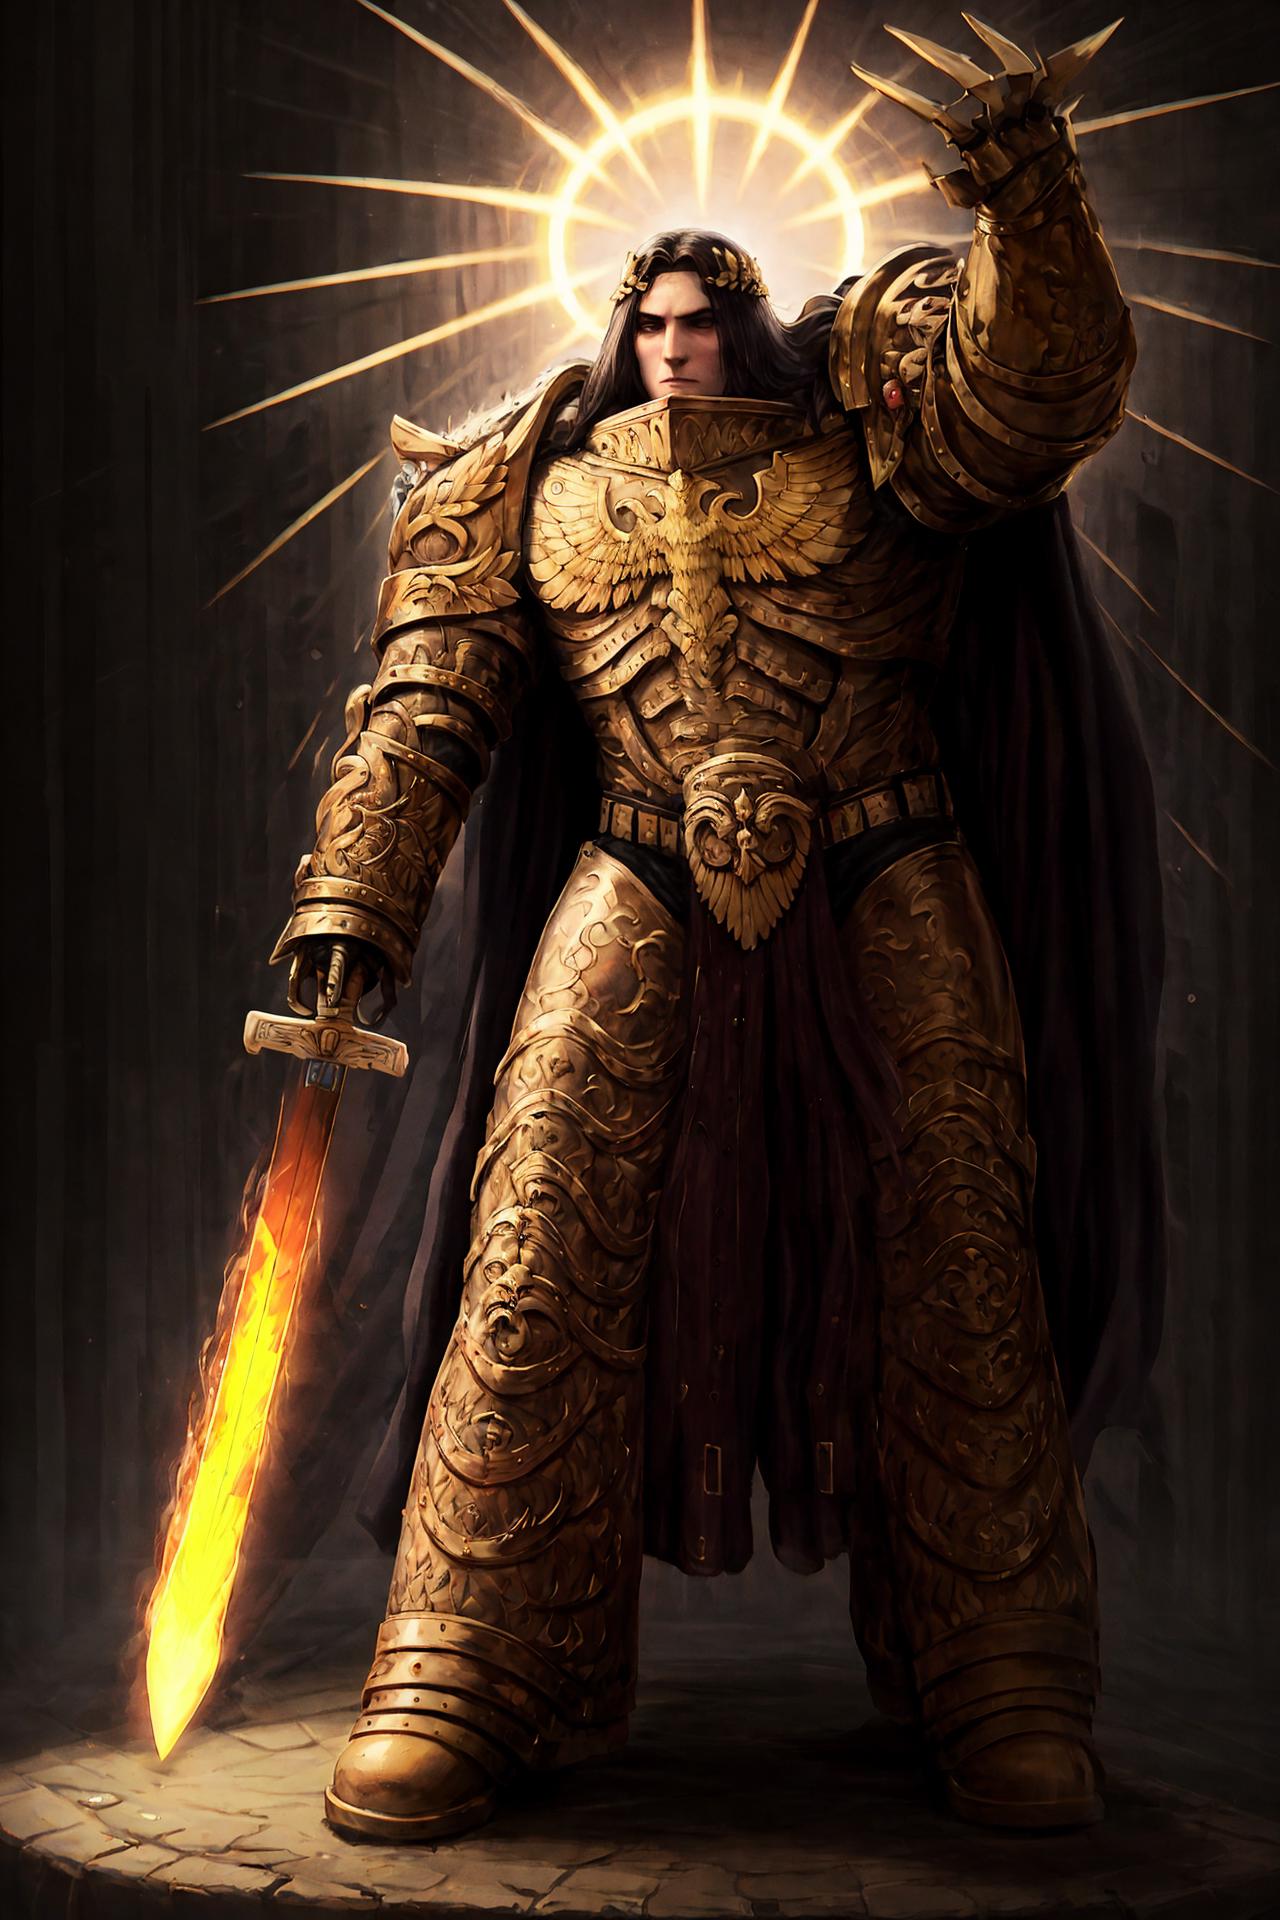 Warhammer 40,000 Emperor of Mankind image by ZT000